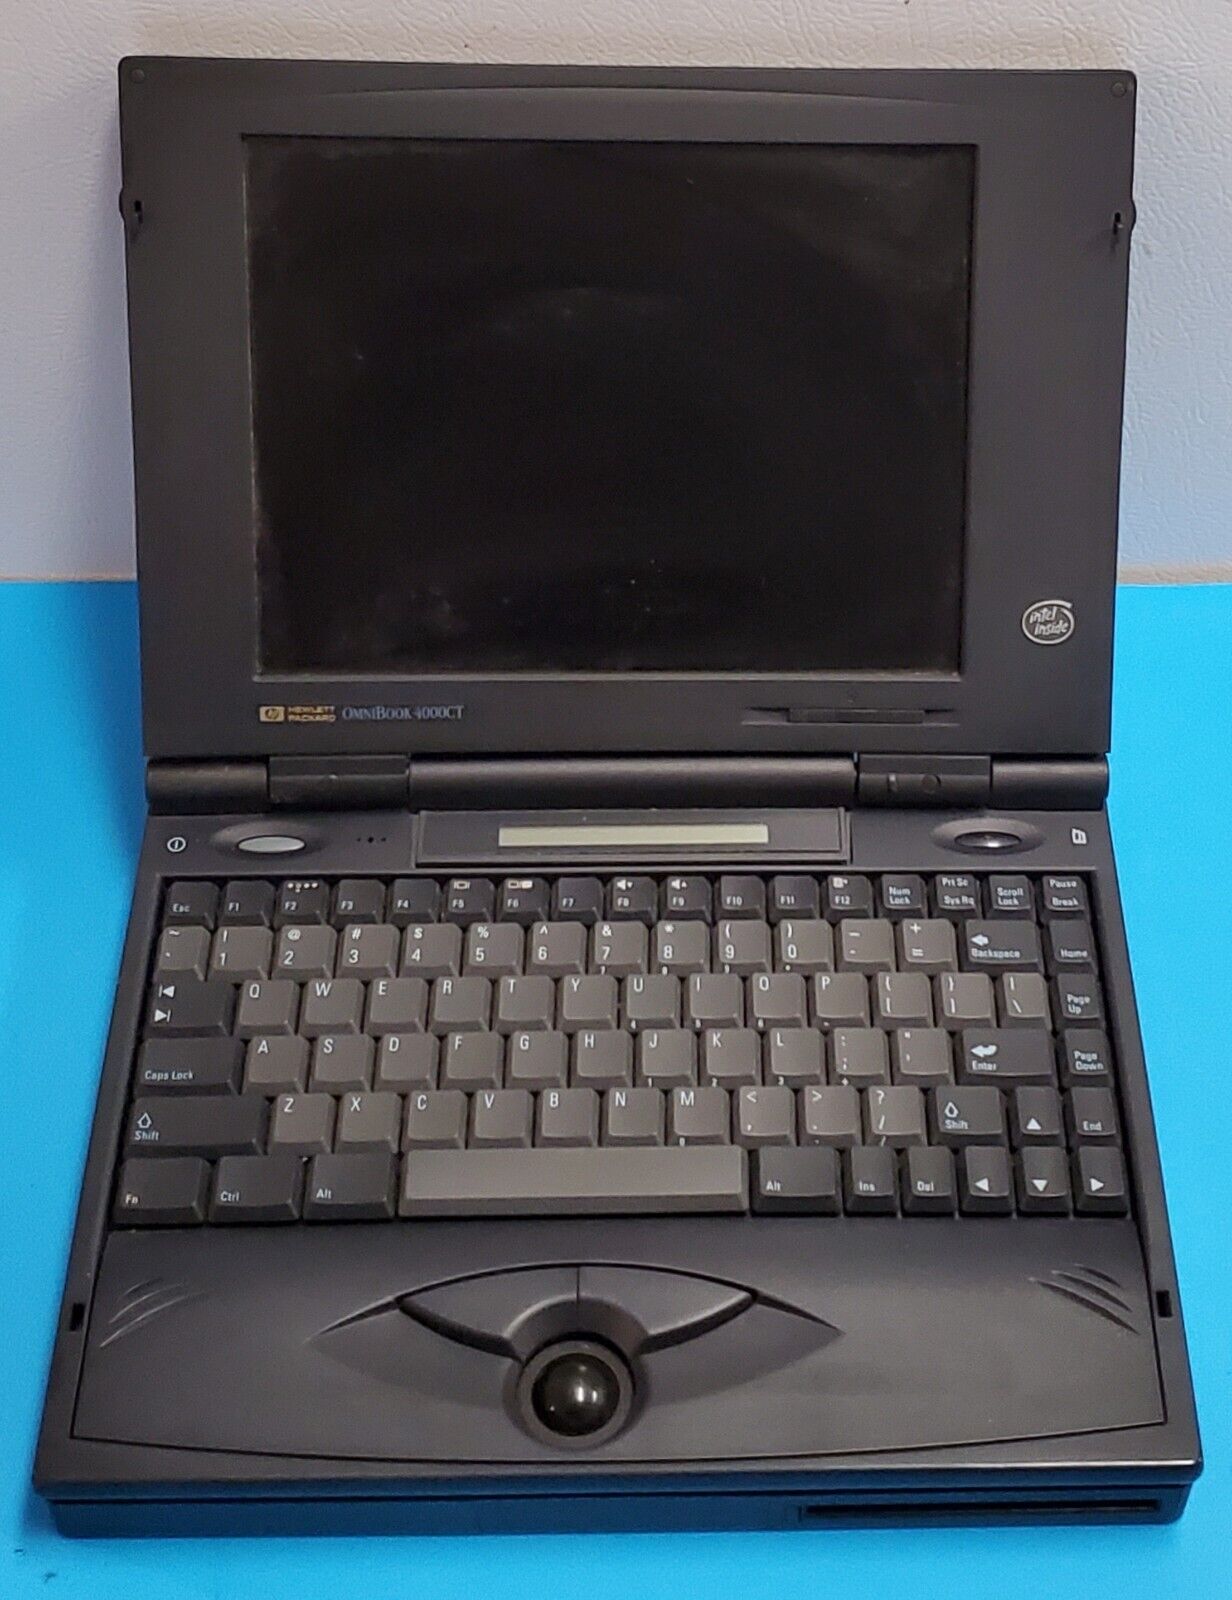 Hewlett Packard HP OmniBook 4000CT Laptop Computer Vintage - AS IS